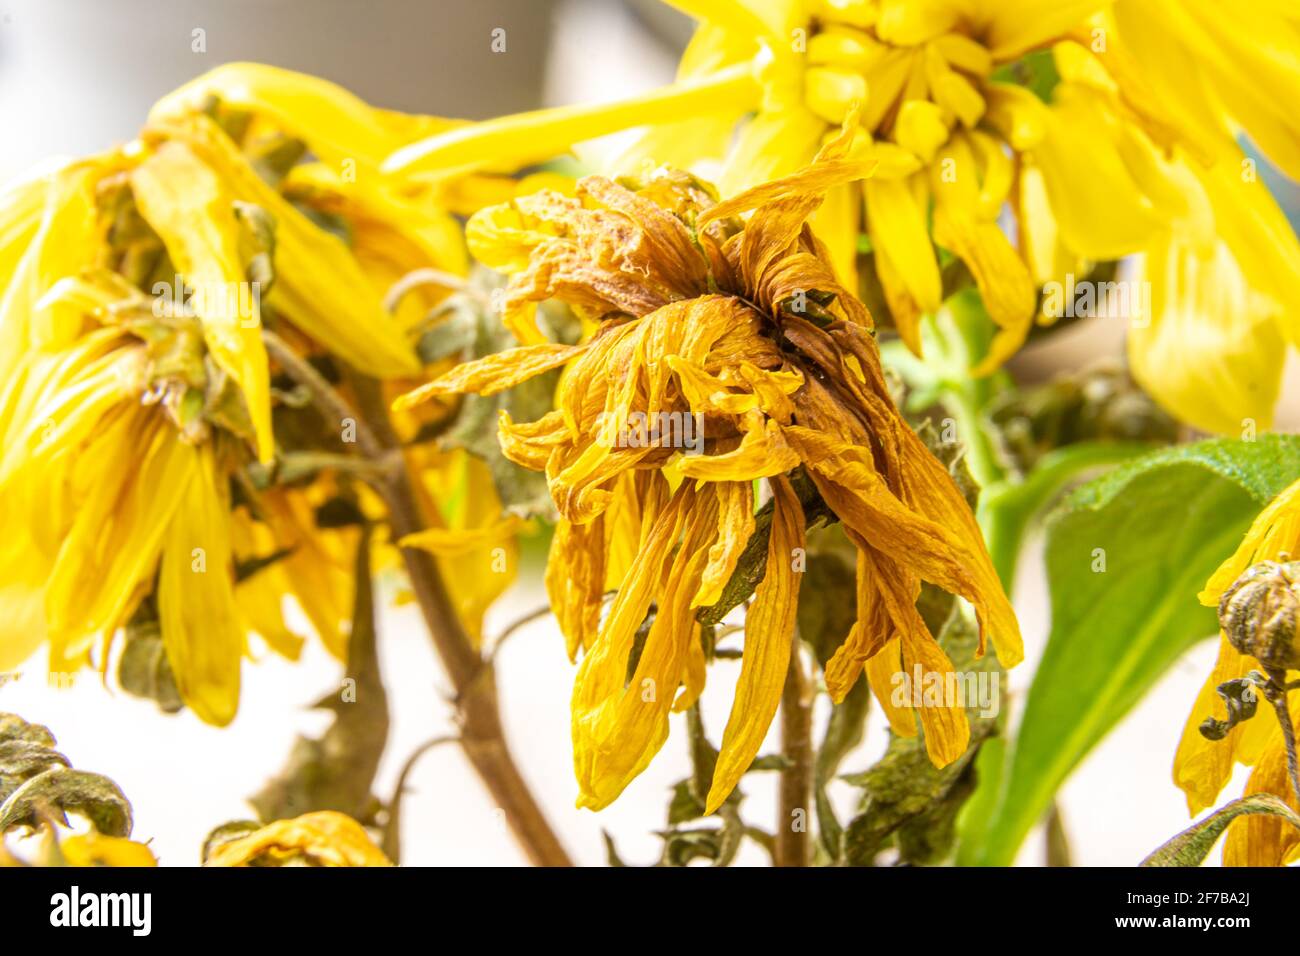 Eine sterbende Zimmerpflanze mit verwelkten gelben Blüten. Innen gelbe Chrysantheme stirbt, selektiver Fokus Stockfoto